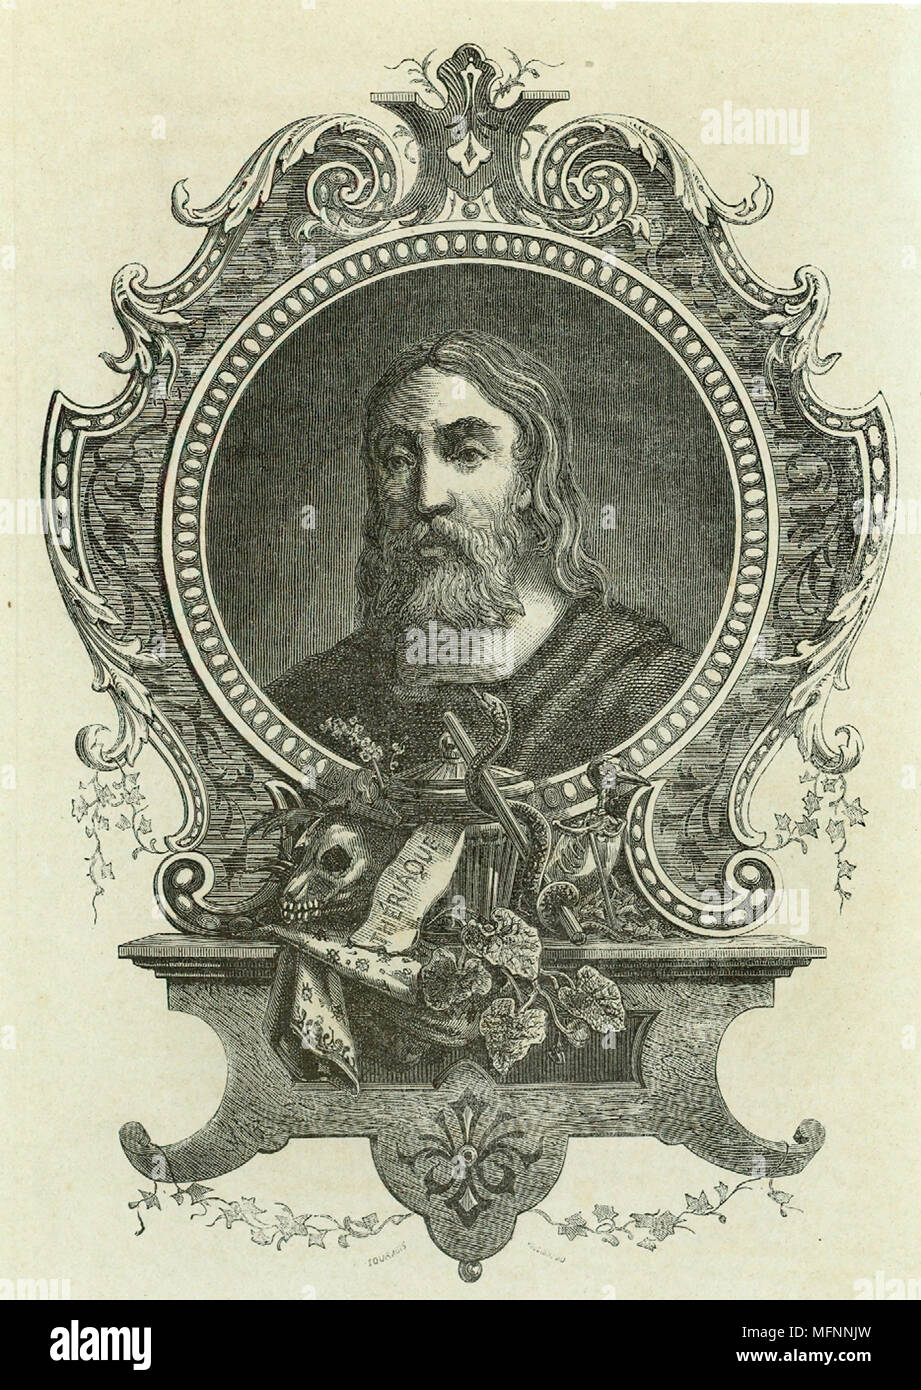 Galeno (Claudio Galeno c130-201 AD) médico griego que se trasladó a Roma y se convirtió en médico a tres emperadores. Grabado publicado en París, 1866. Foto de stock